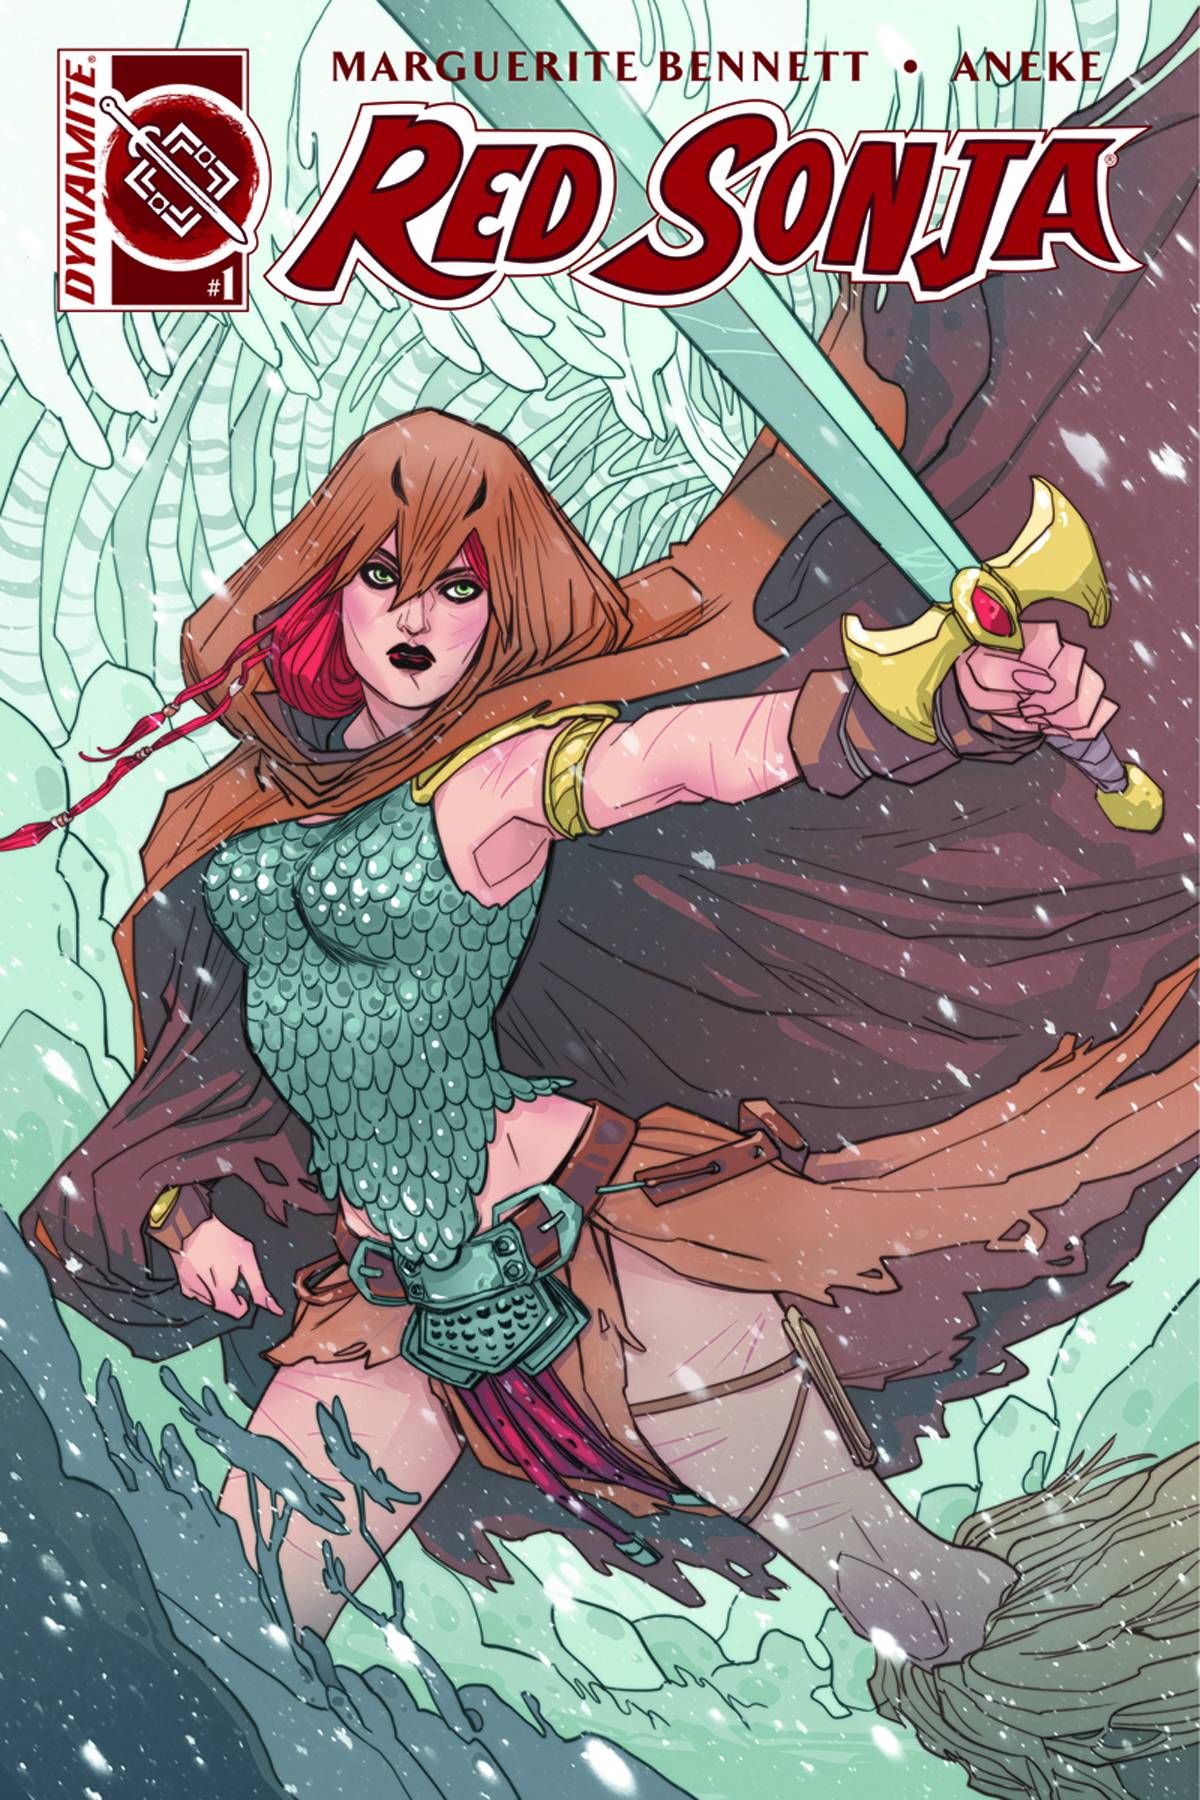 Red Sonja (Volume 3) #1 Comic